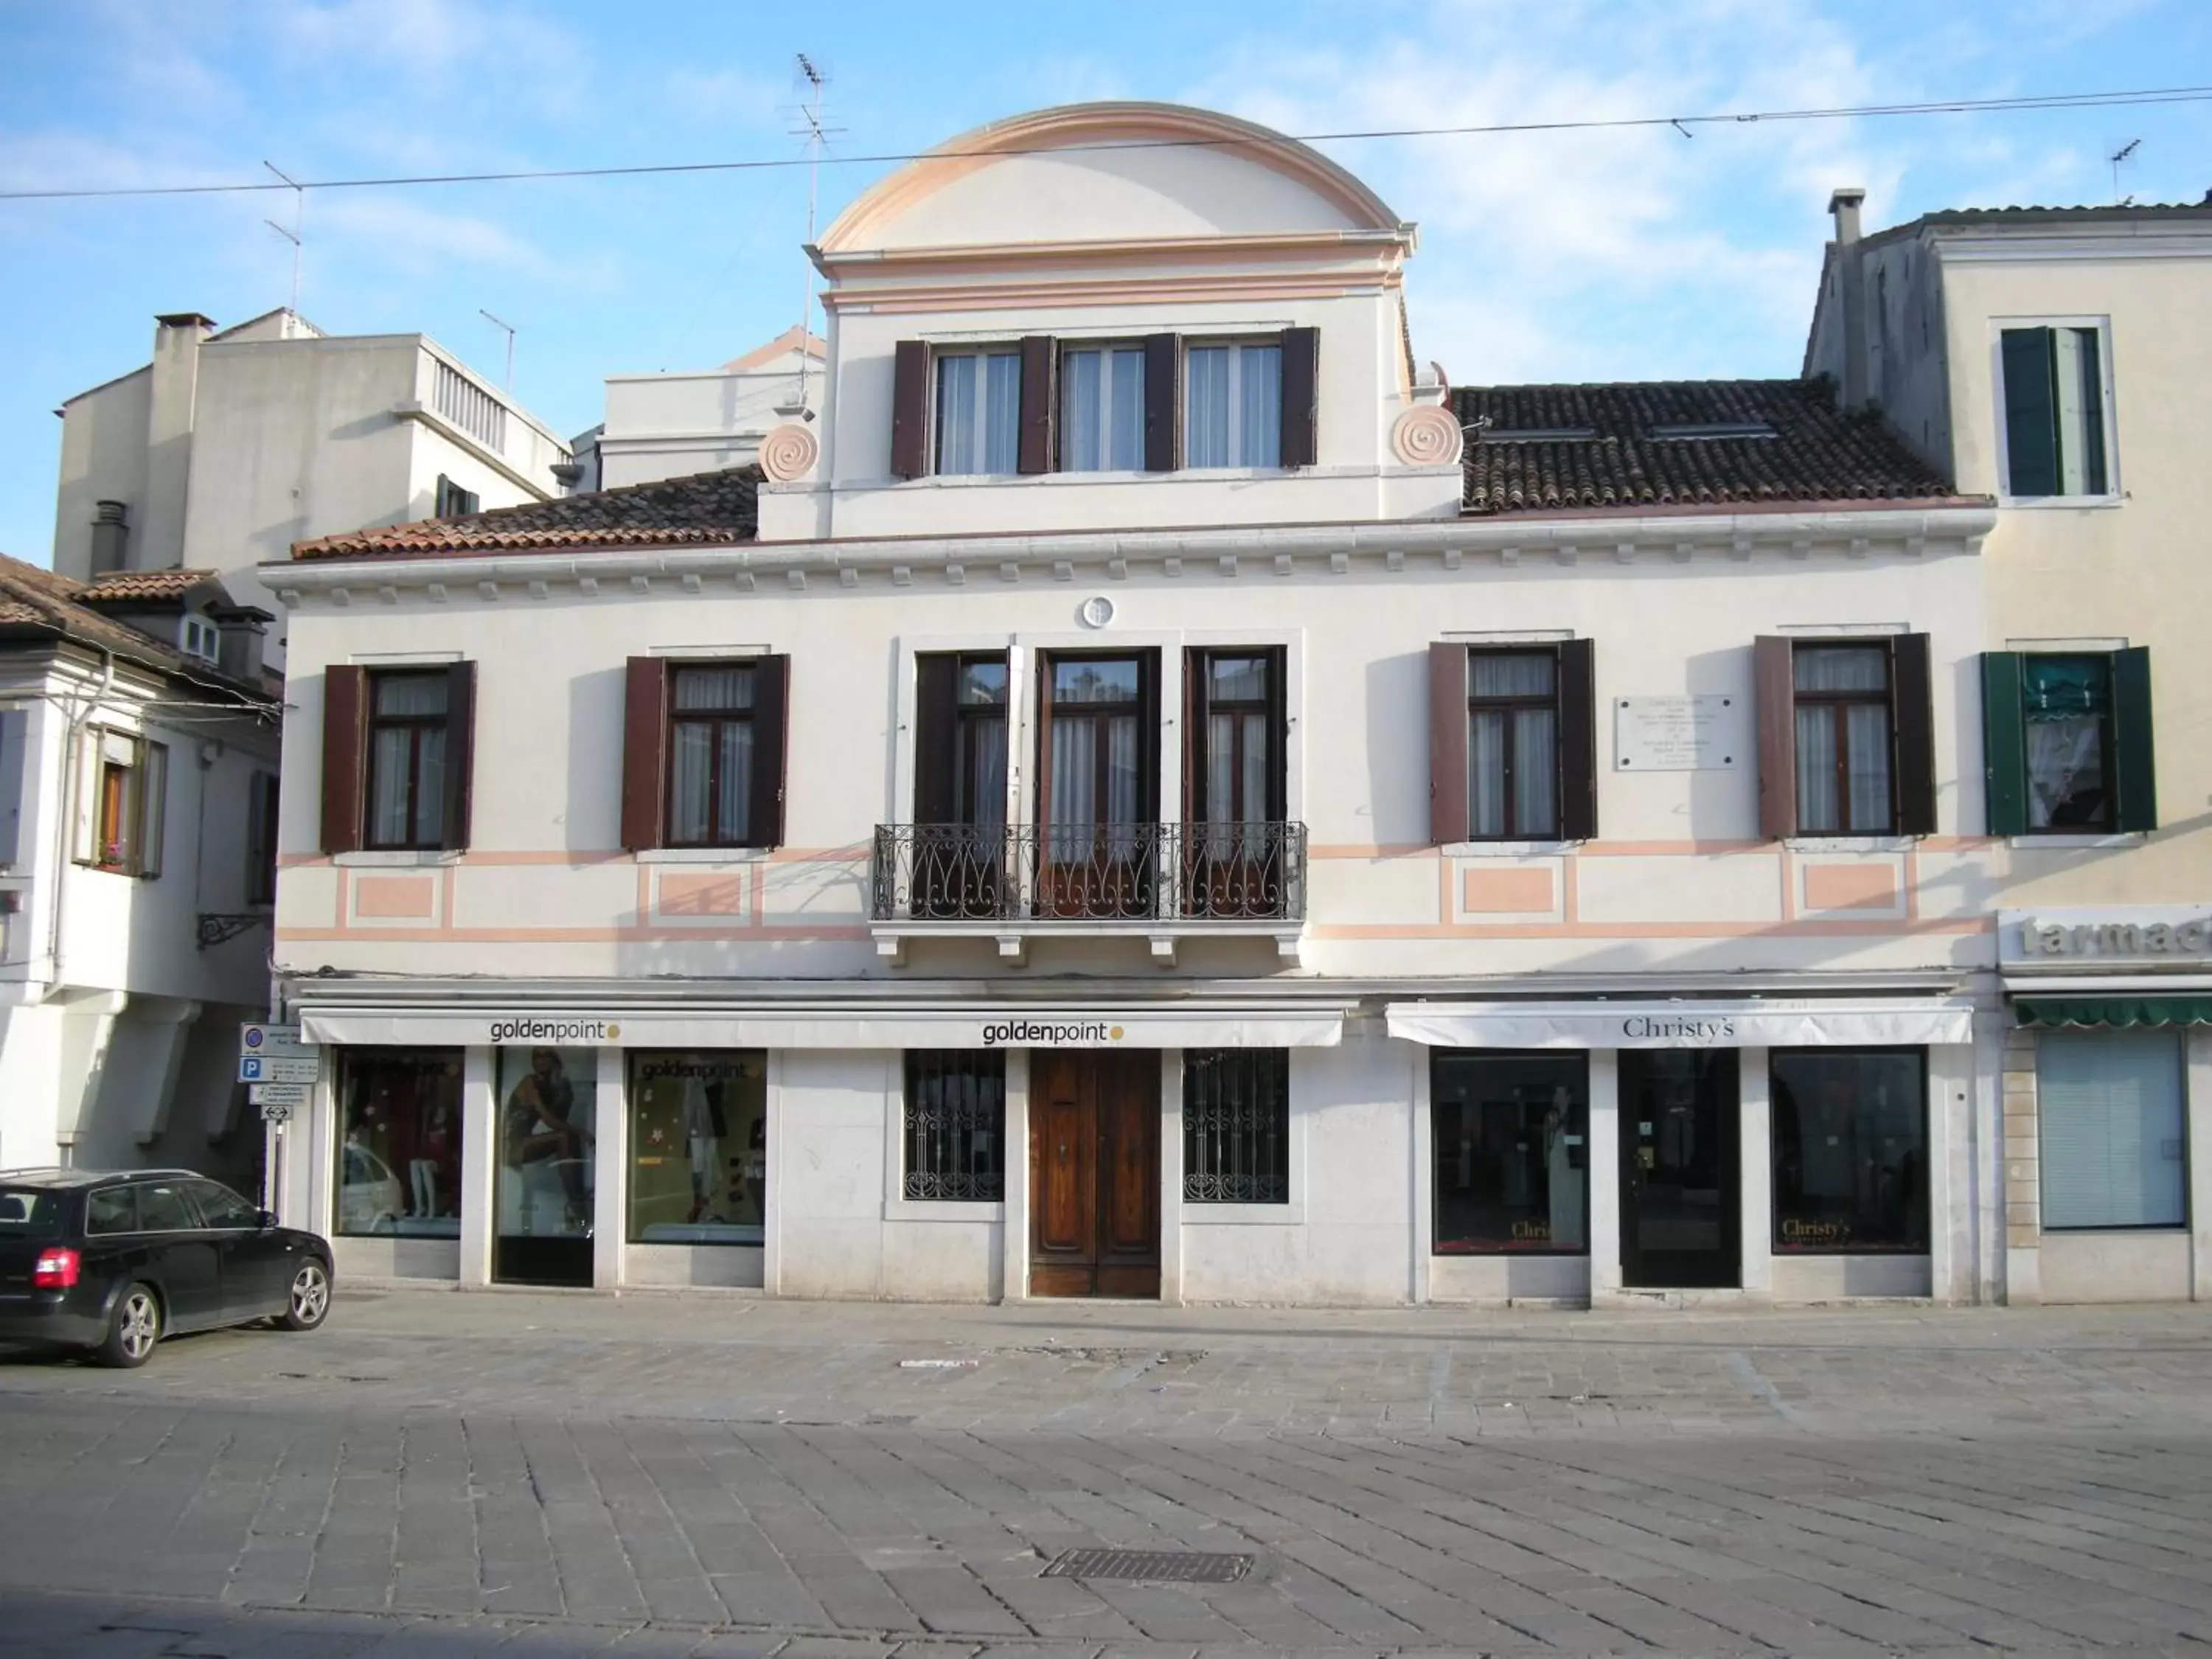 Property Building in Casa di Carlo Goldoni - Dimora Storica